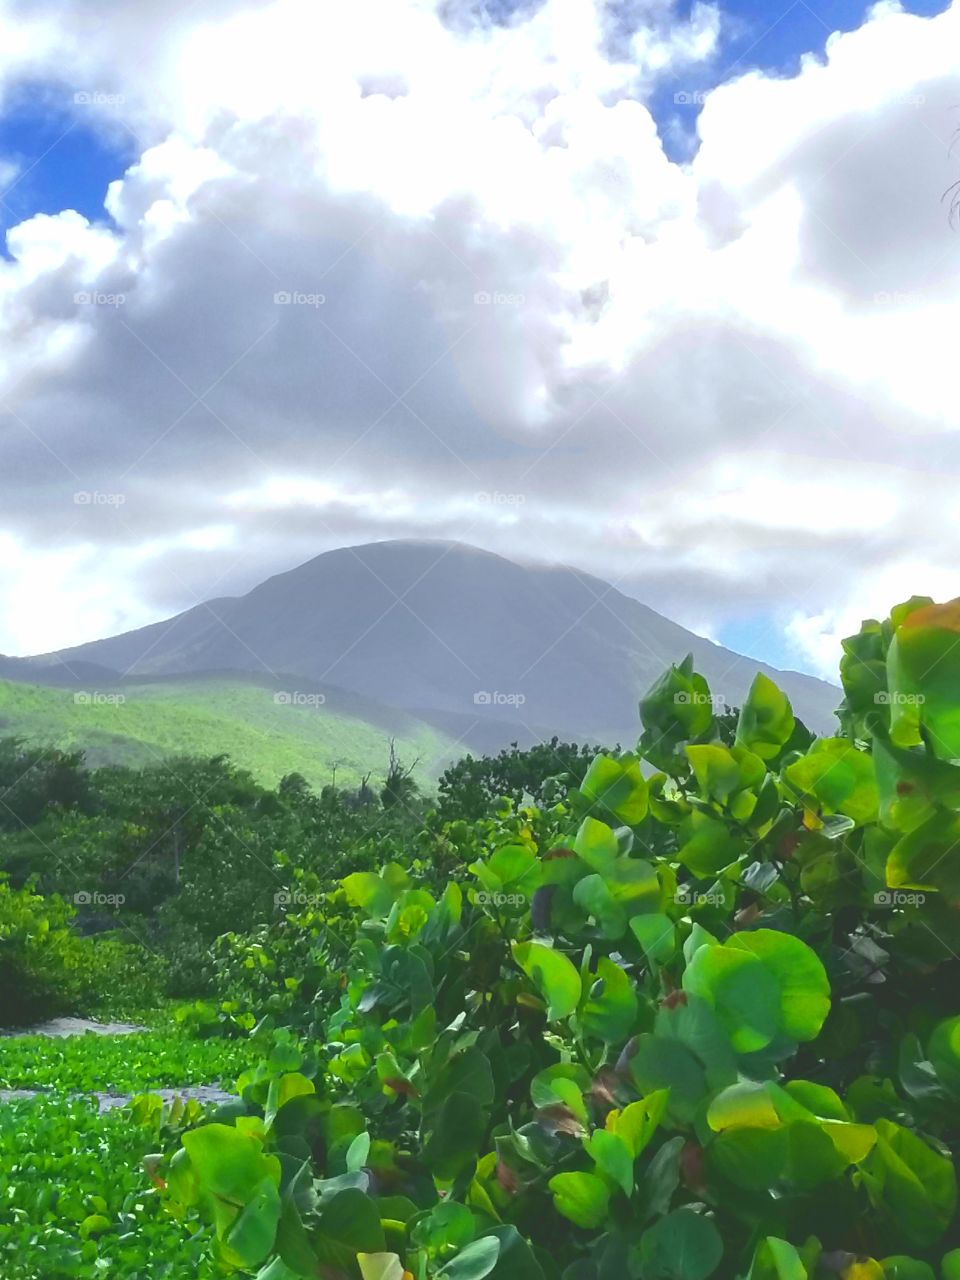 Mount Nevis